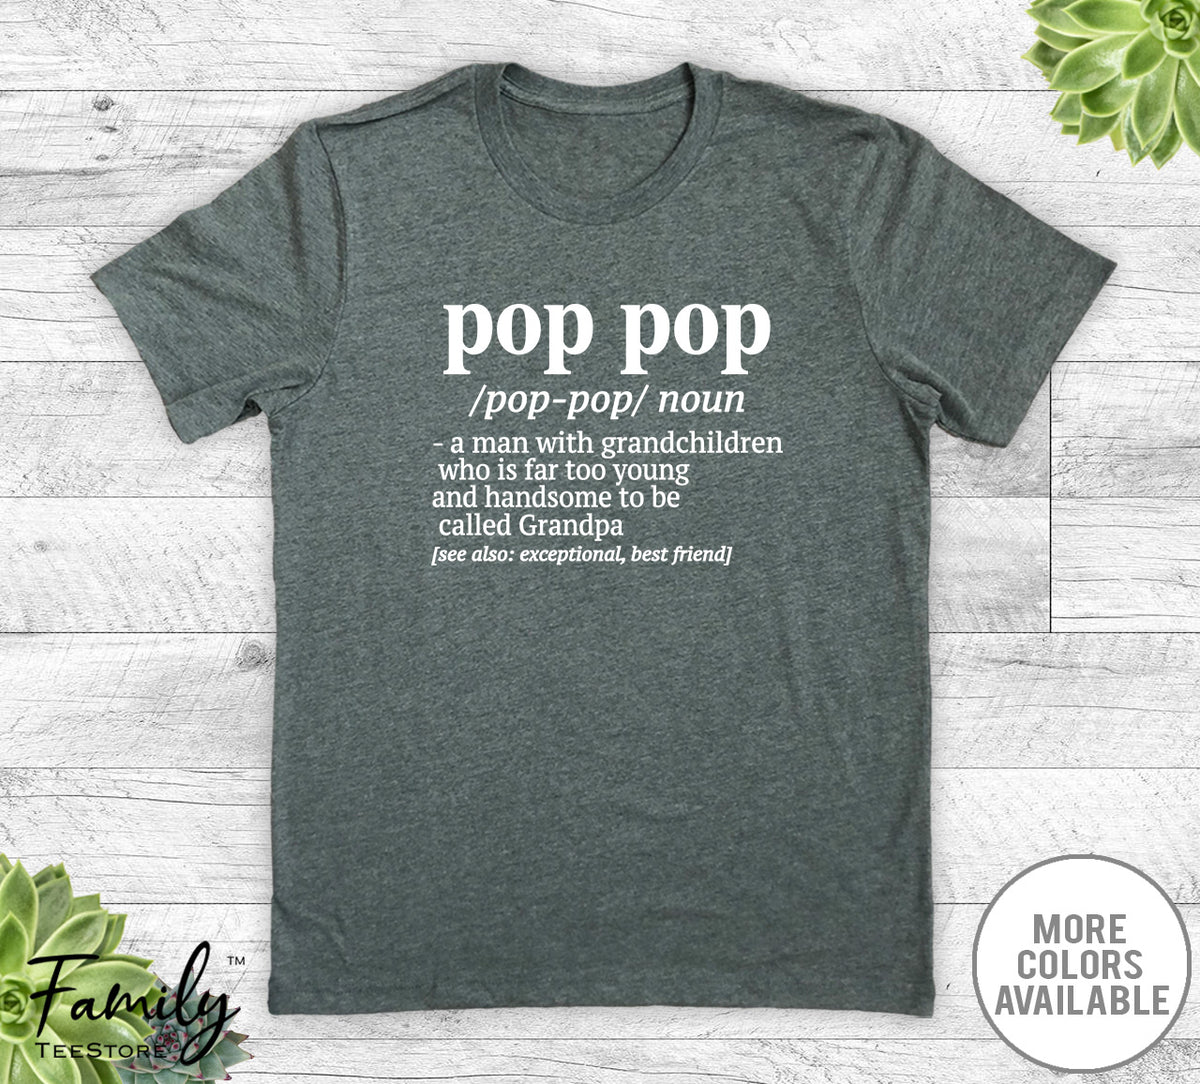 Pop Pop A Man With Grandchildren... - Unisex T-shirt - Pop Pop Shirt - Pop Pop Gift - familyteeprints